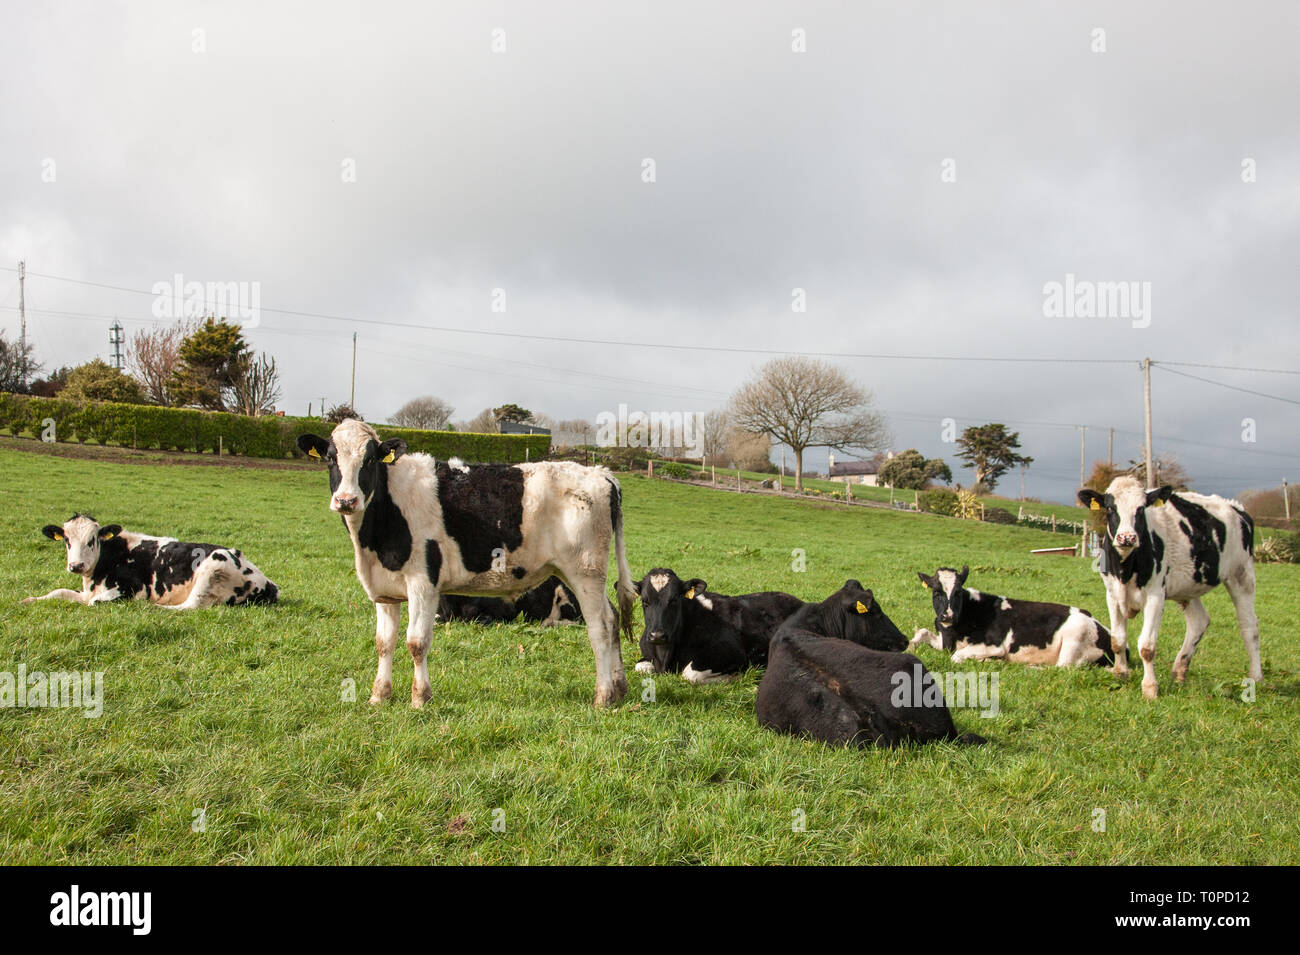 La Bahía de Fennell, Cork, Irlanda. 21 Mar, 2019. El Reino Unido es el principal mercado para la carne de vacuno irlandesa, ya que representó más del 57% de las exportaciones de carne de vacuno irlandesa en 2015. Carne extorsiona desde Irlanda hasta el Reino Unido está valorado en casi 1.100 millones de euros al año y ahora es una preocupación para los agricultores con Brexit inminente. La imagen muestra el yearling pastan en una granja en la Bahía de Fennell, Co. de Cork, Irlanda. Crédito: David Creedon/Alamy Live News Foto de stock